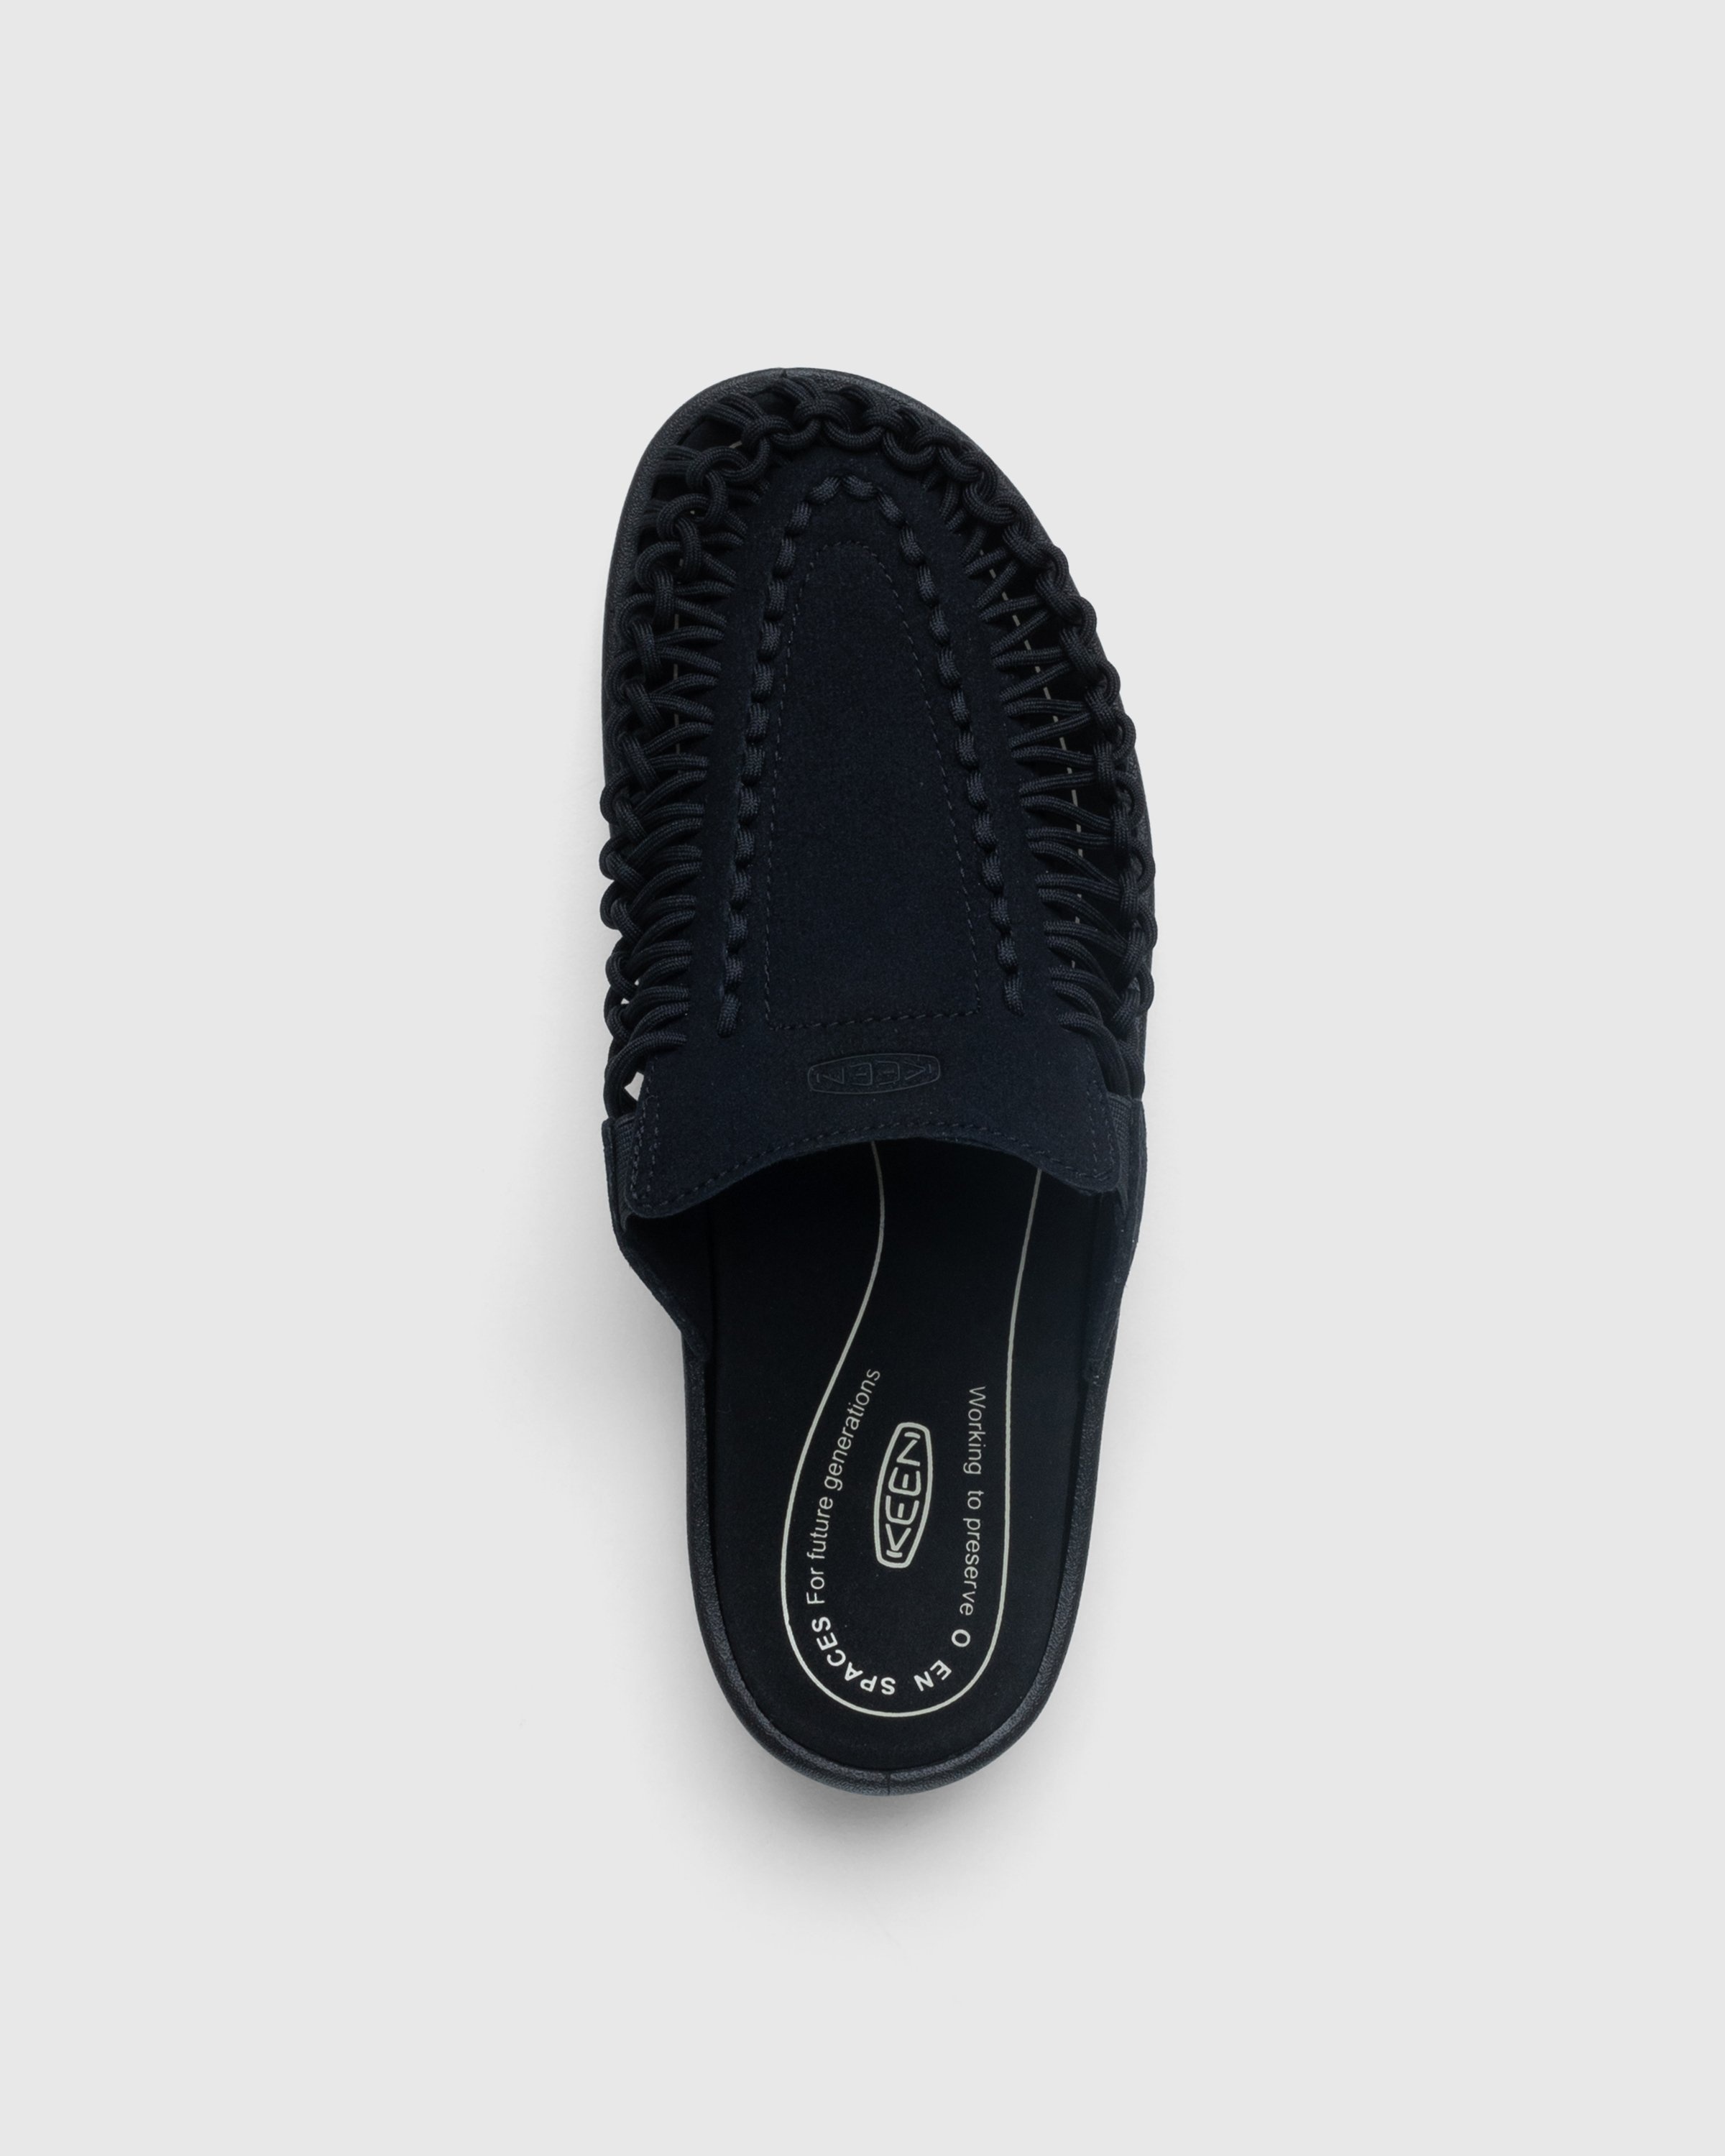 Keen – Uneek II Slide Black - Sandals & Slides - Black - Image 5